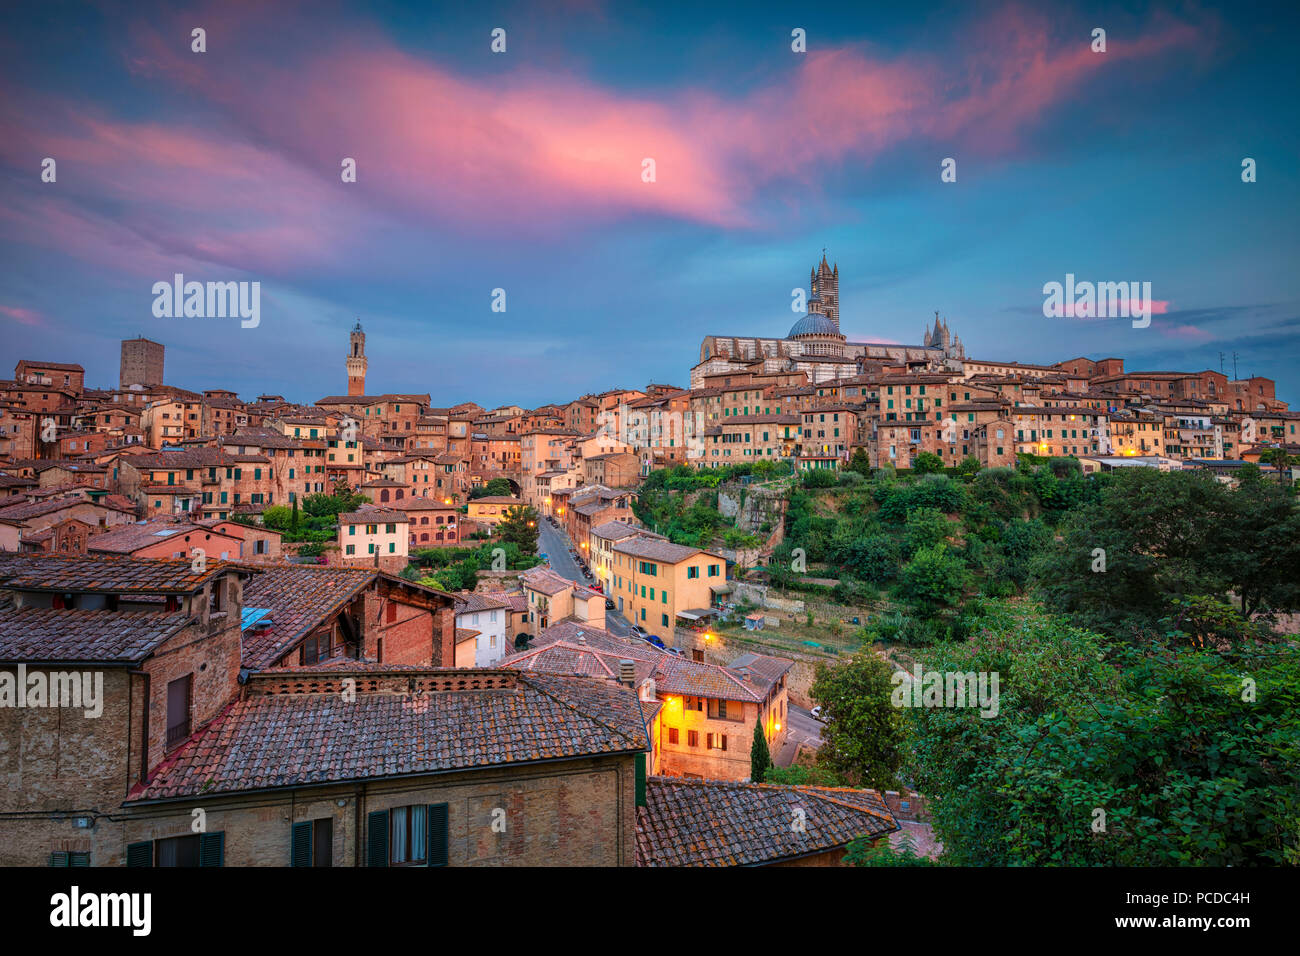 Sienne. Des images aériennes de paysage urbain ville médiévale de Sienne, en Italie pendant le coucher du soleil. Banque D'Images